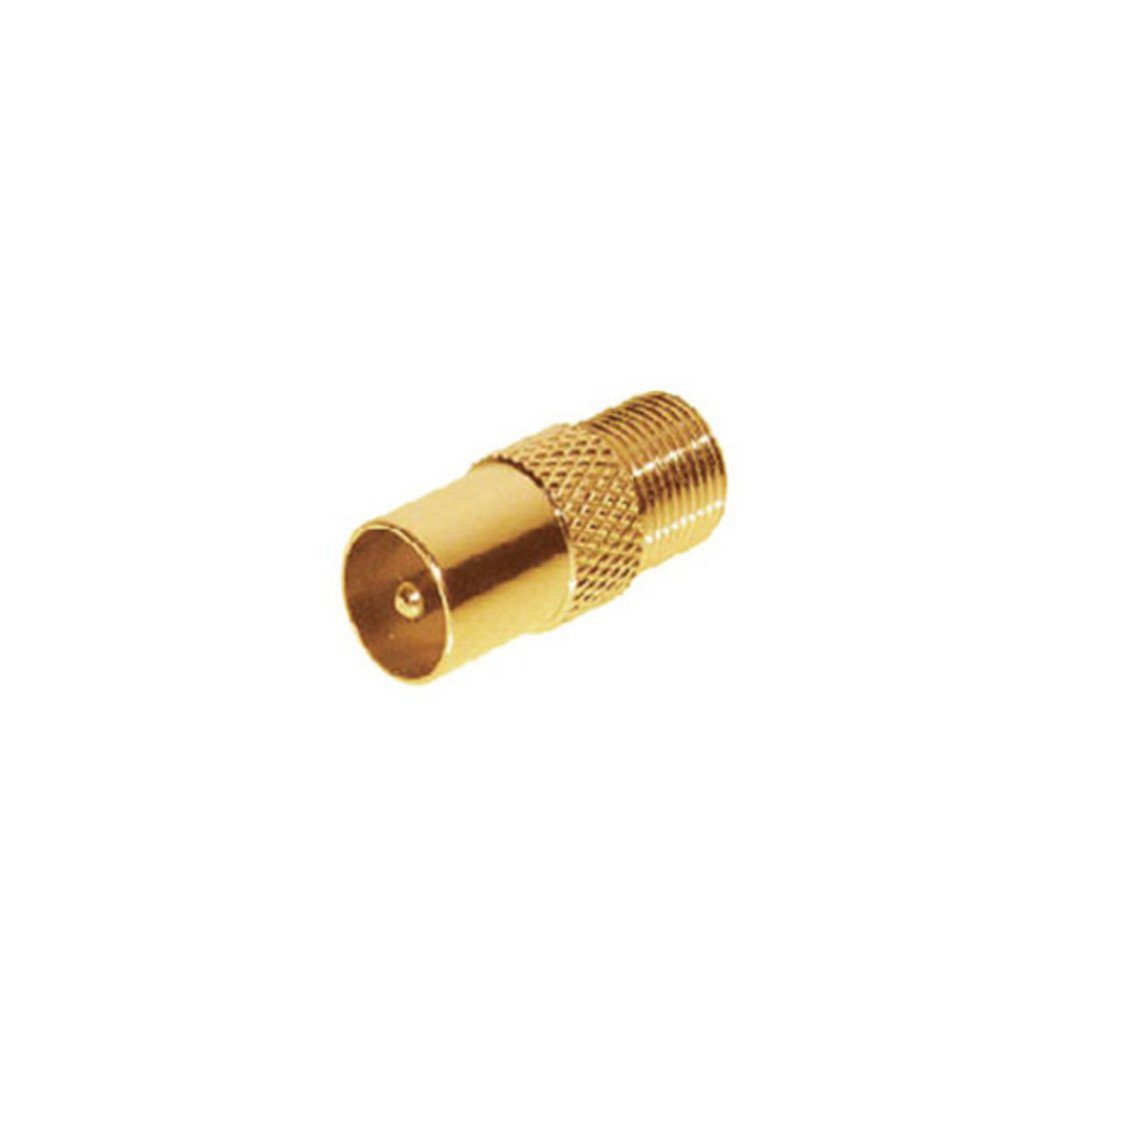 connectivity® F-Buchse, auf vergoldet Koax-Kabelverbinder maximum IEC-Stecker S/CONN